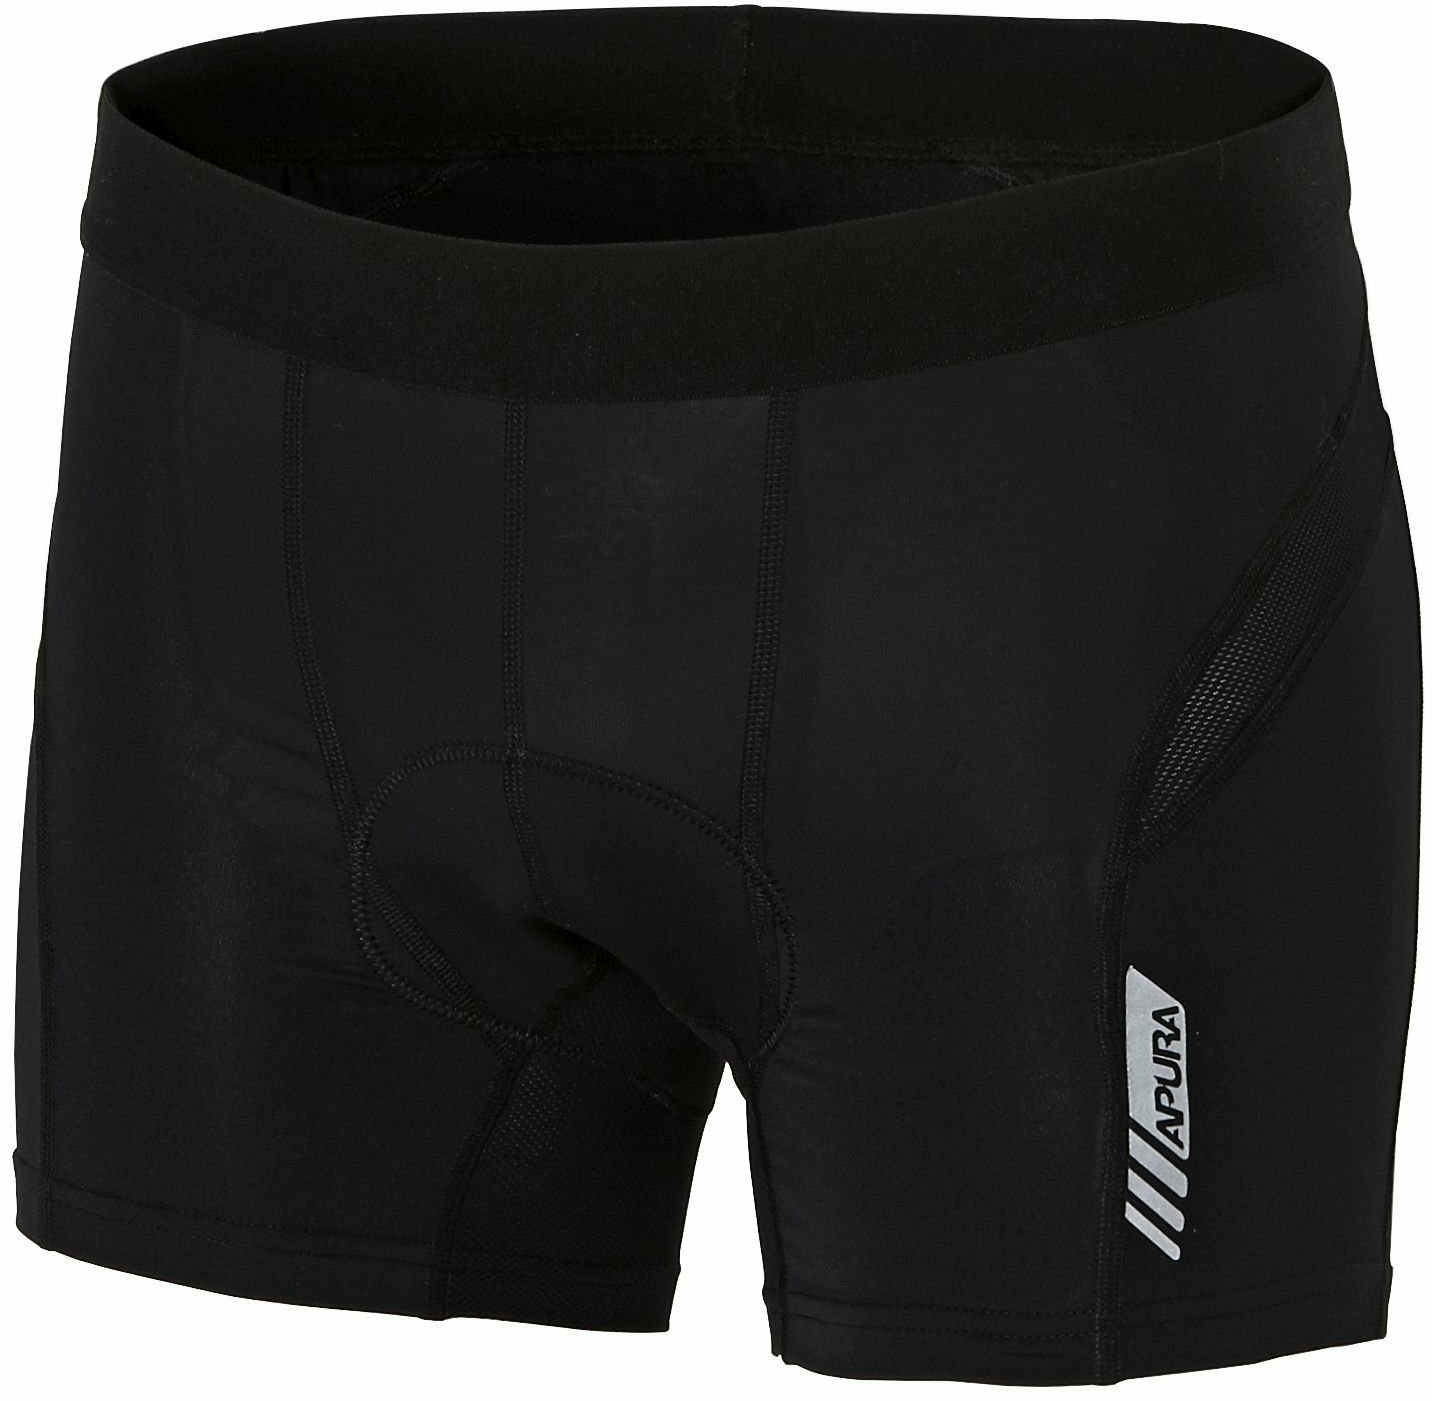 Bekleidung/Unterwäsche: Apura  Herren Unterhose Baselayer Shorts 2.0 S 